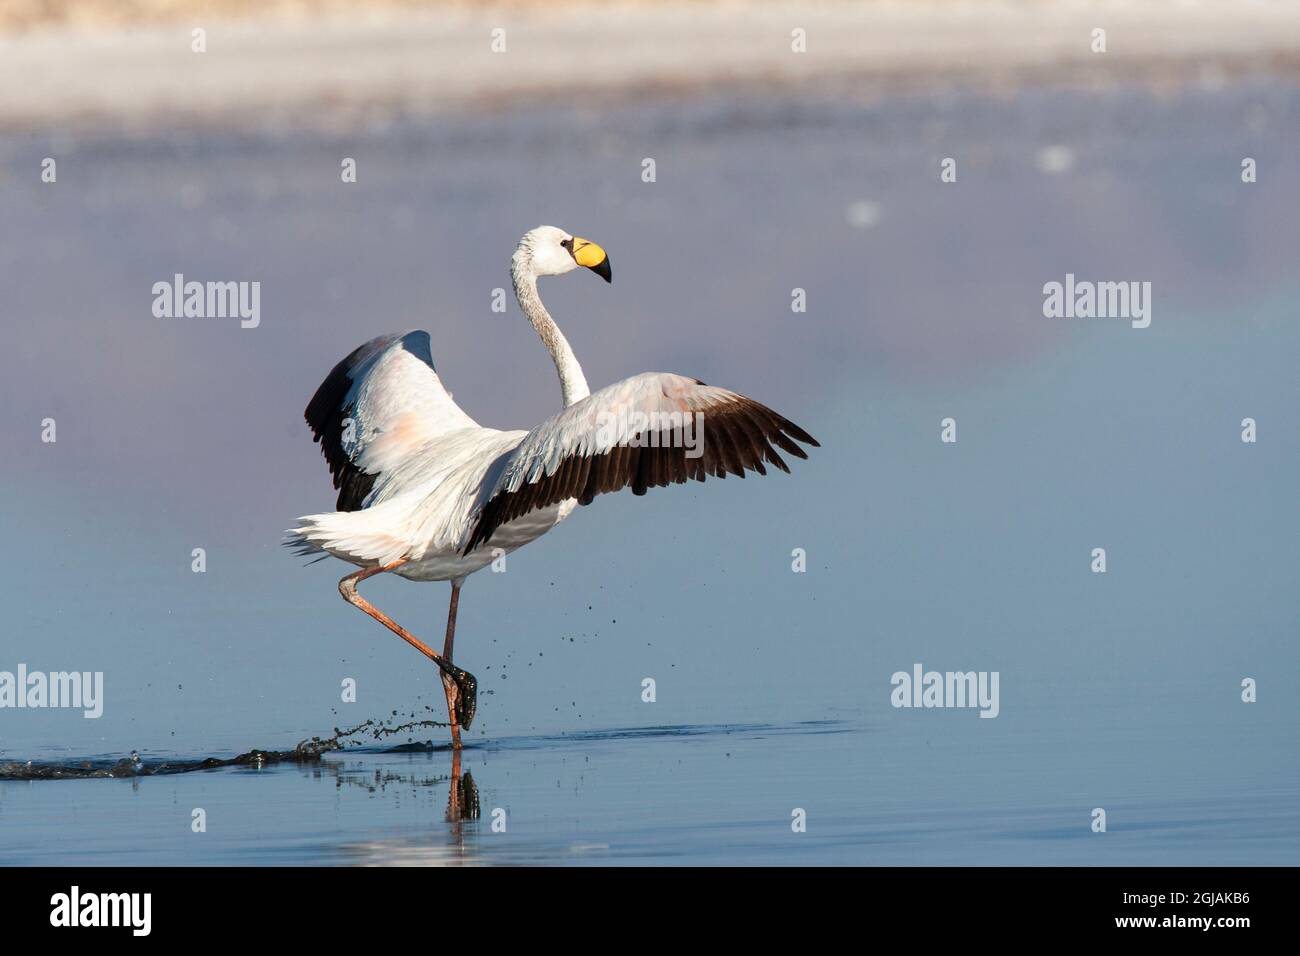 Chile, Salar de Atacama, Reserva Nacional Los Flamencos, James Flamingo. Retrato de un joven James flamingo que aún no ha desarrollado plumaje rojo. Foto de stock